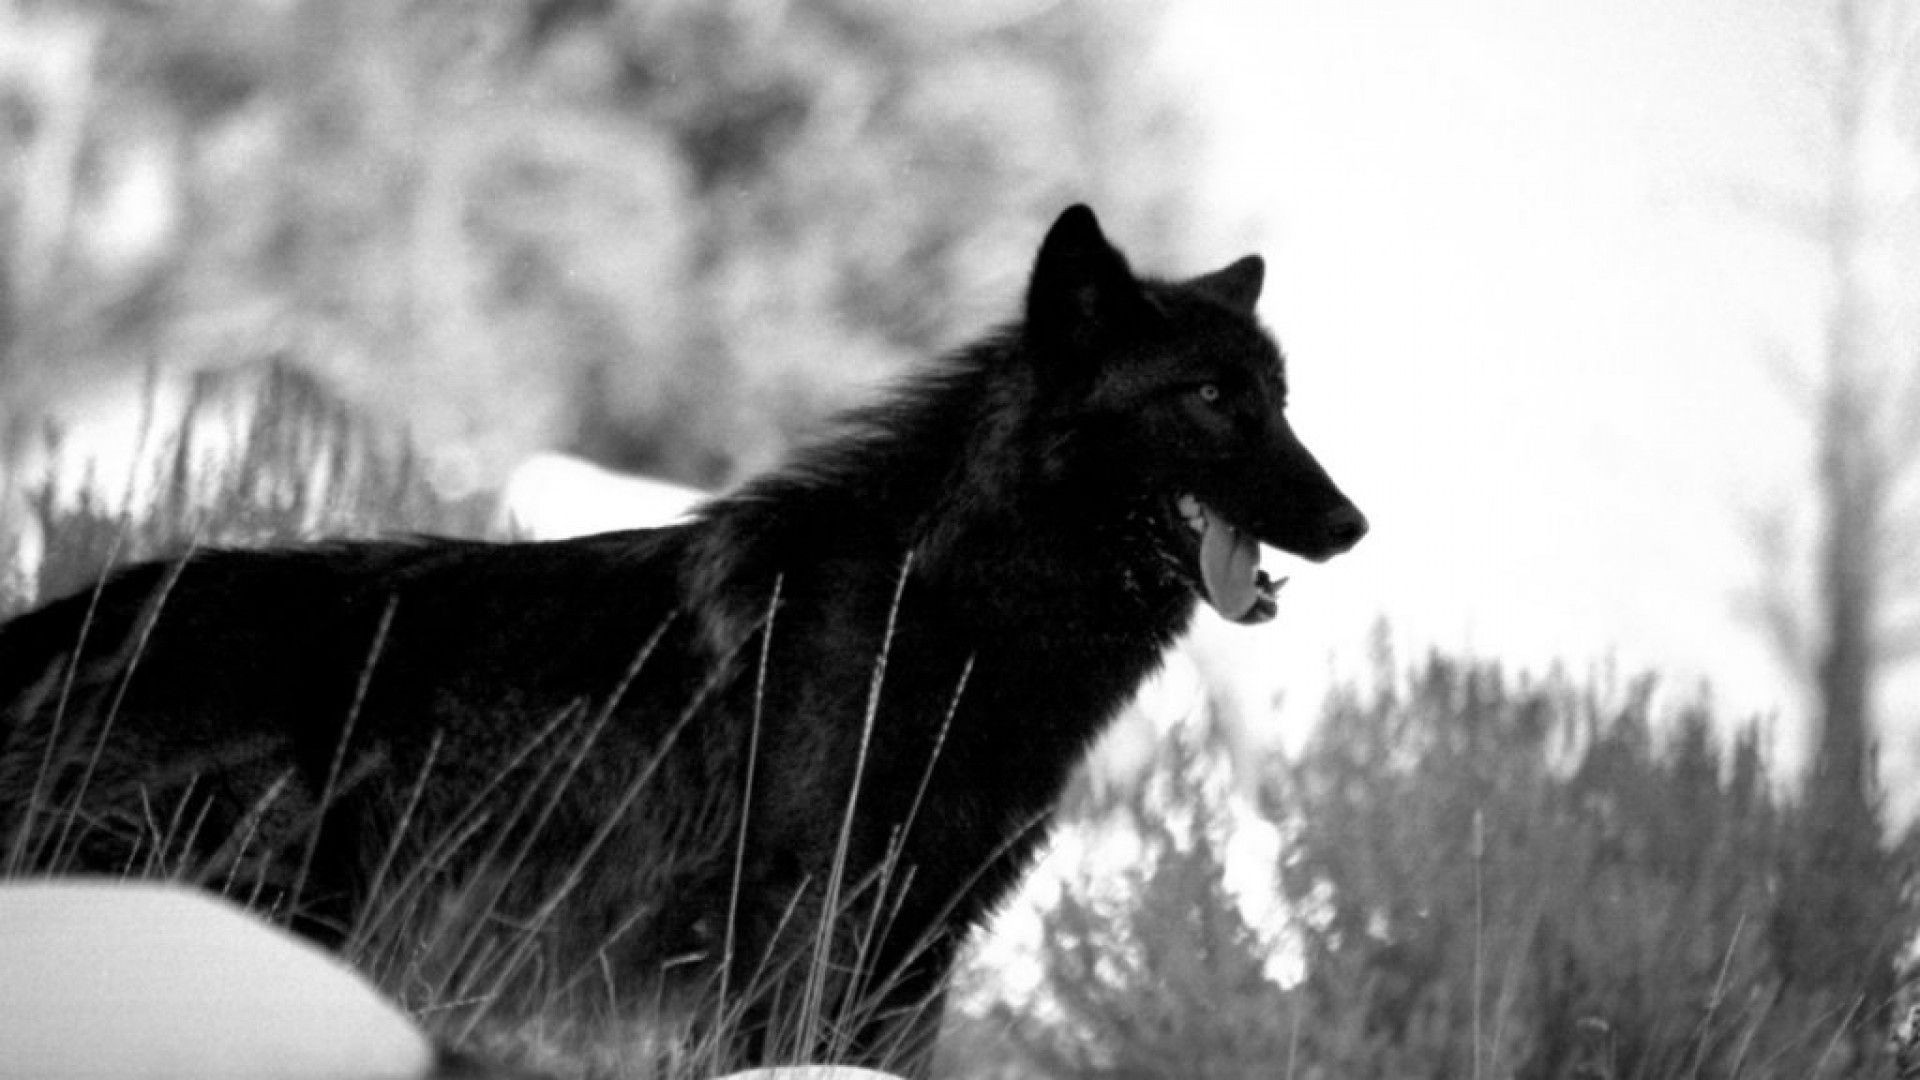 검은 늑대 벽지,개,검정색과 흰색,독일 스피츠 미텔,벨기에 양치기